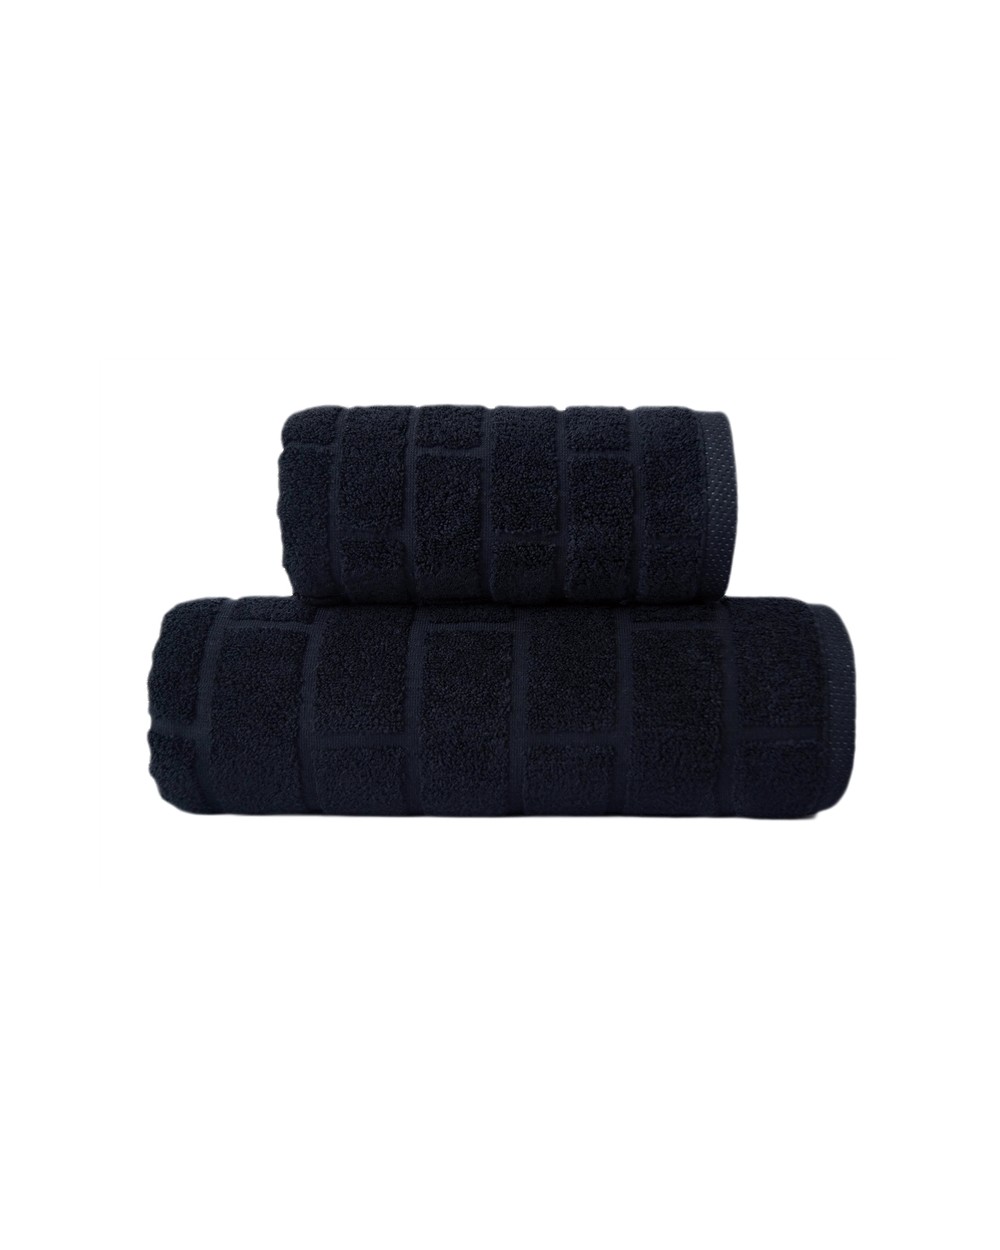 Ręcznik Brick mikrobawełna 70x140 czarny